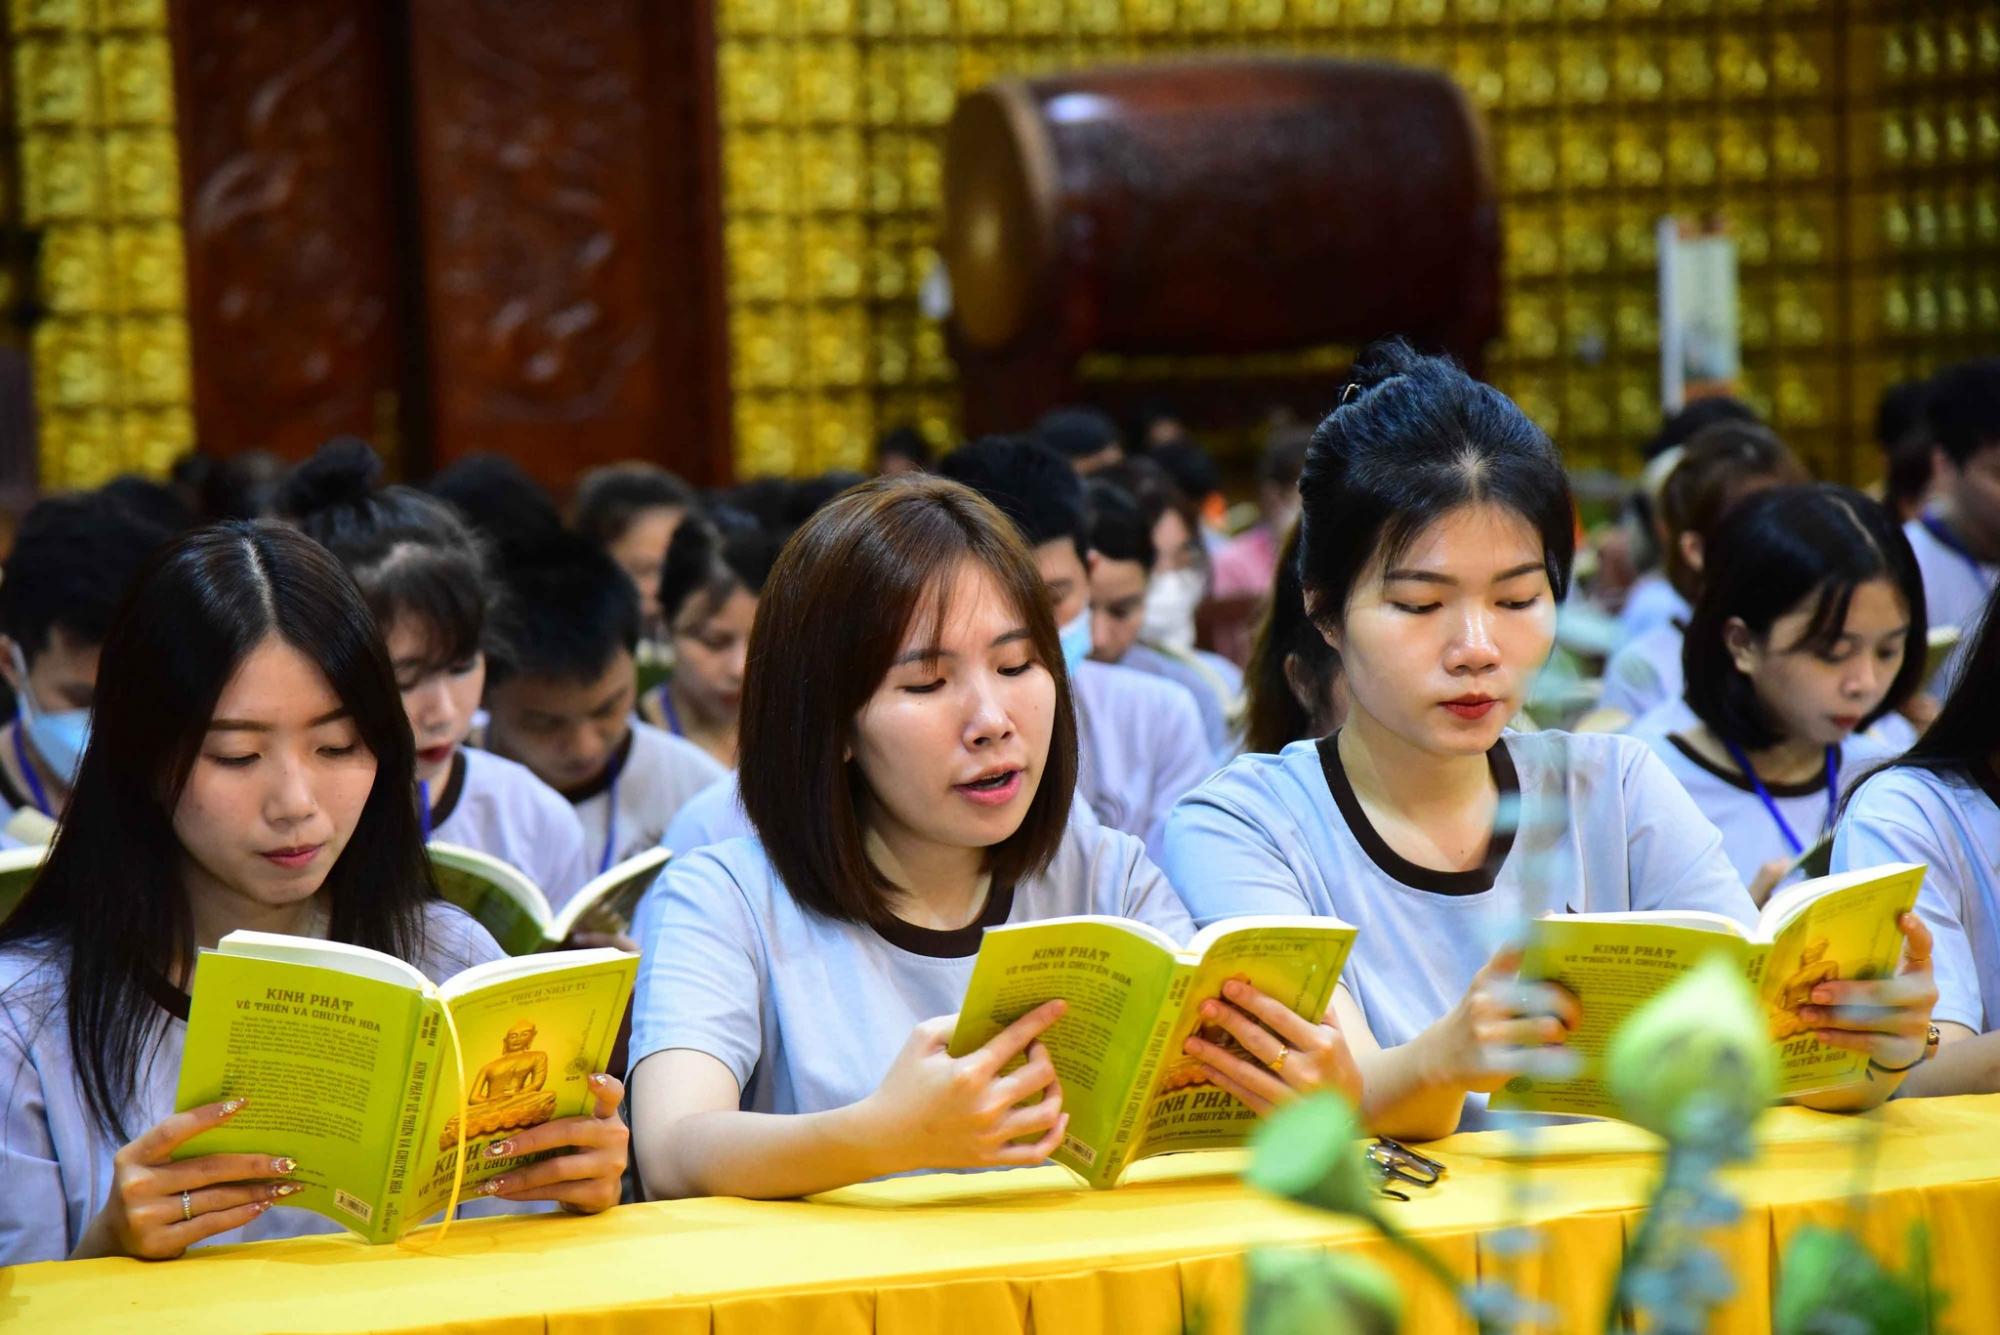 Khóa tu Tuổi Trẻ Hướng Phật: điểm tựa tâm linh của người trẻ